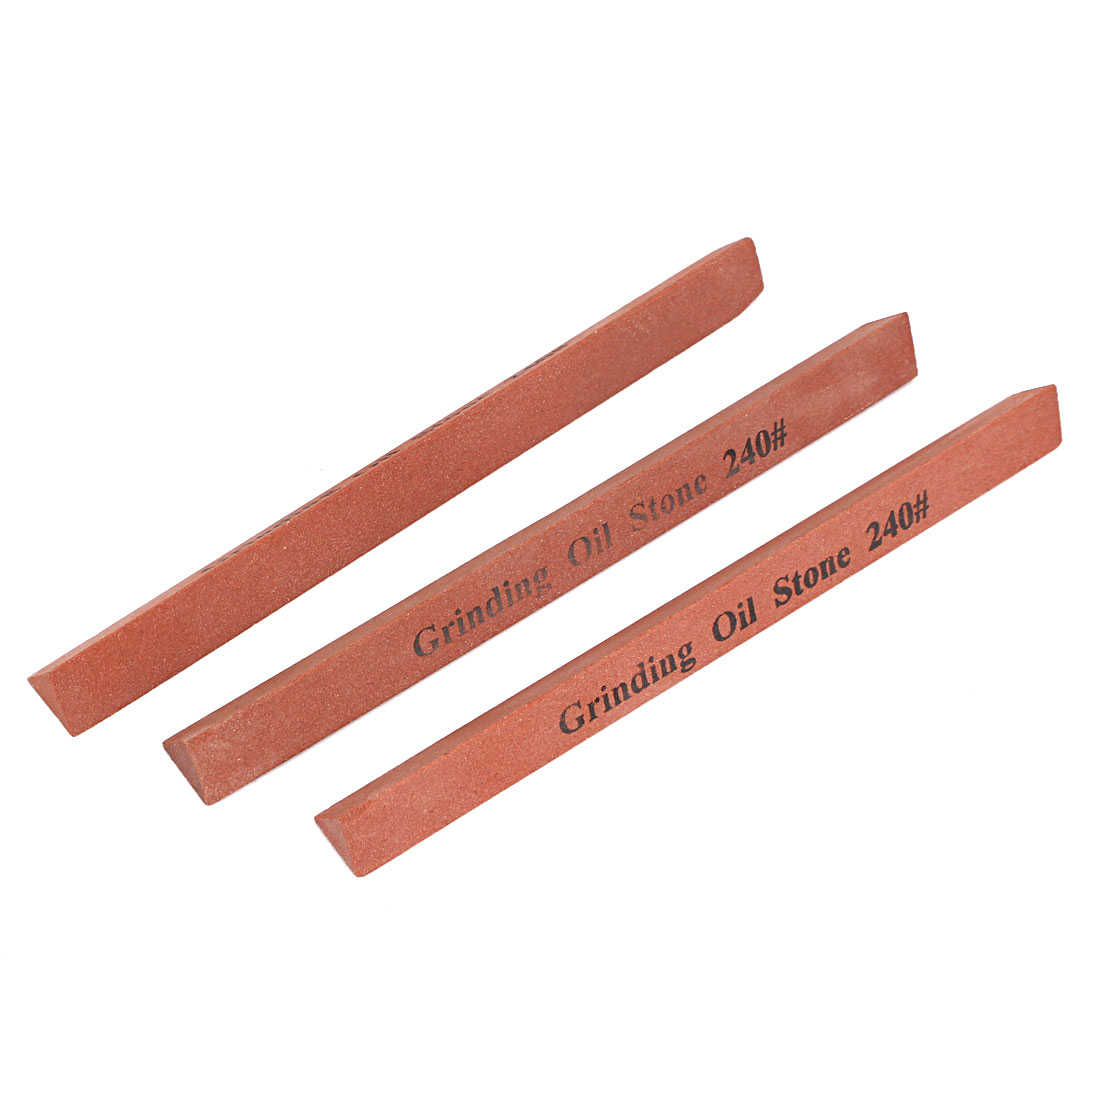 240 Grit Boride Abrasives Polishing Oil Stone Sticks Tool Red 3 Pcs